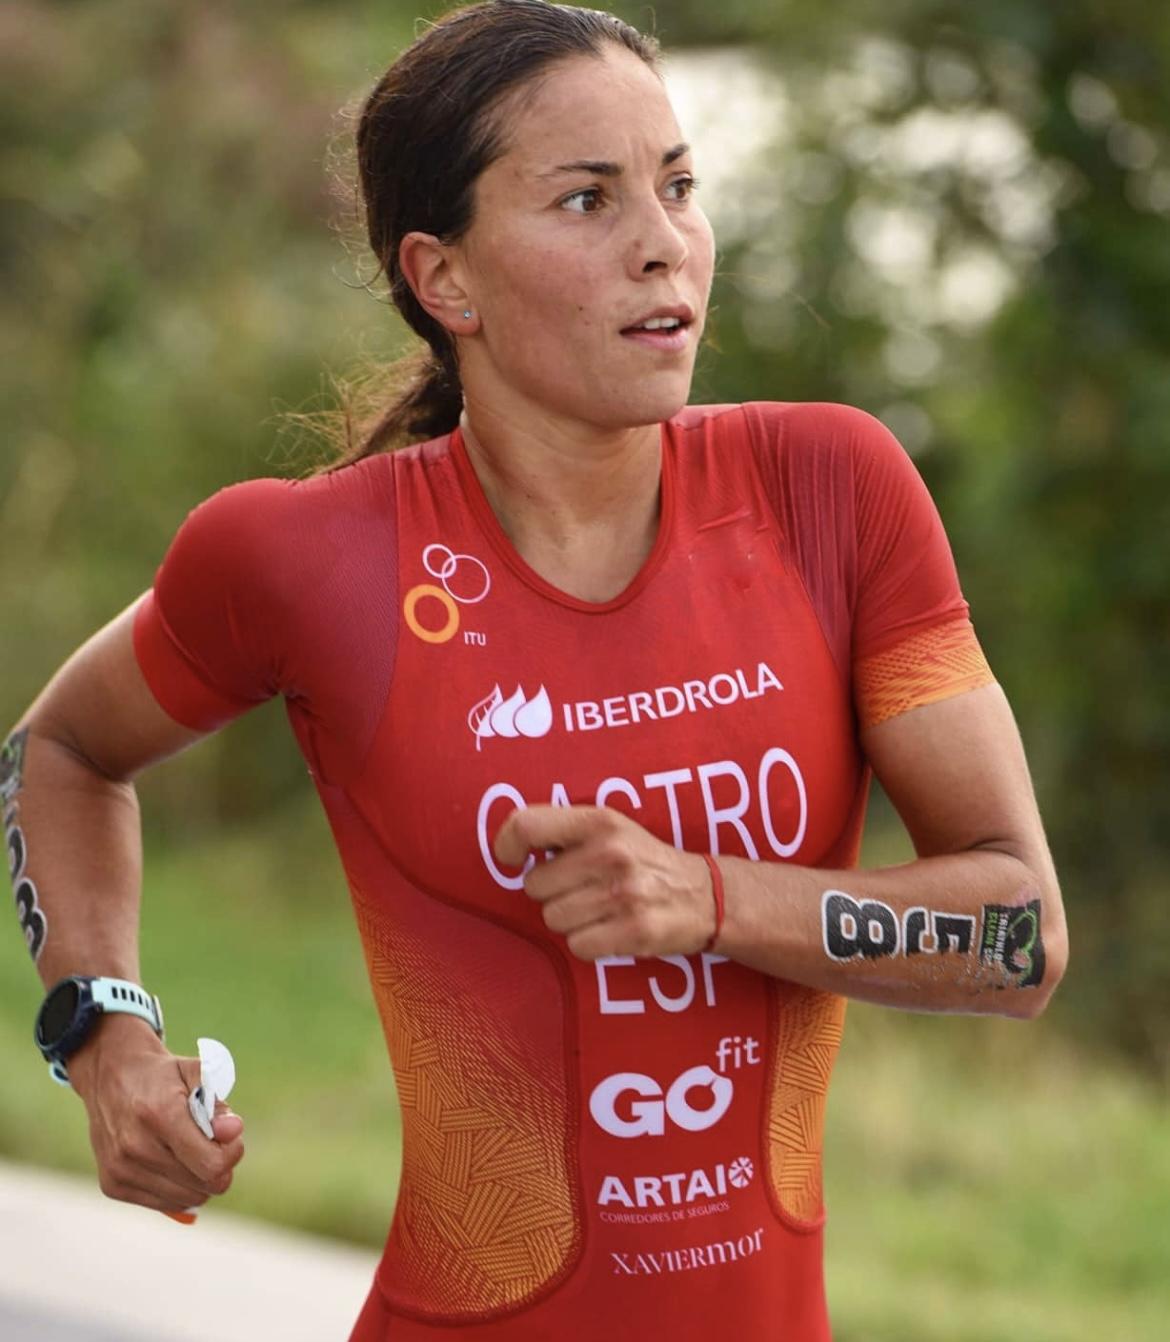 Spanish triathlete Saleta Castro running